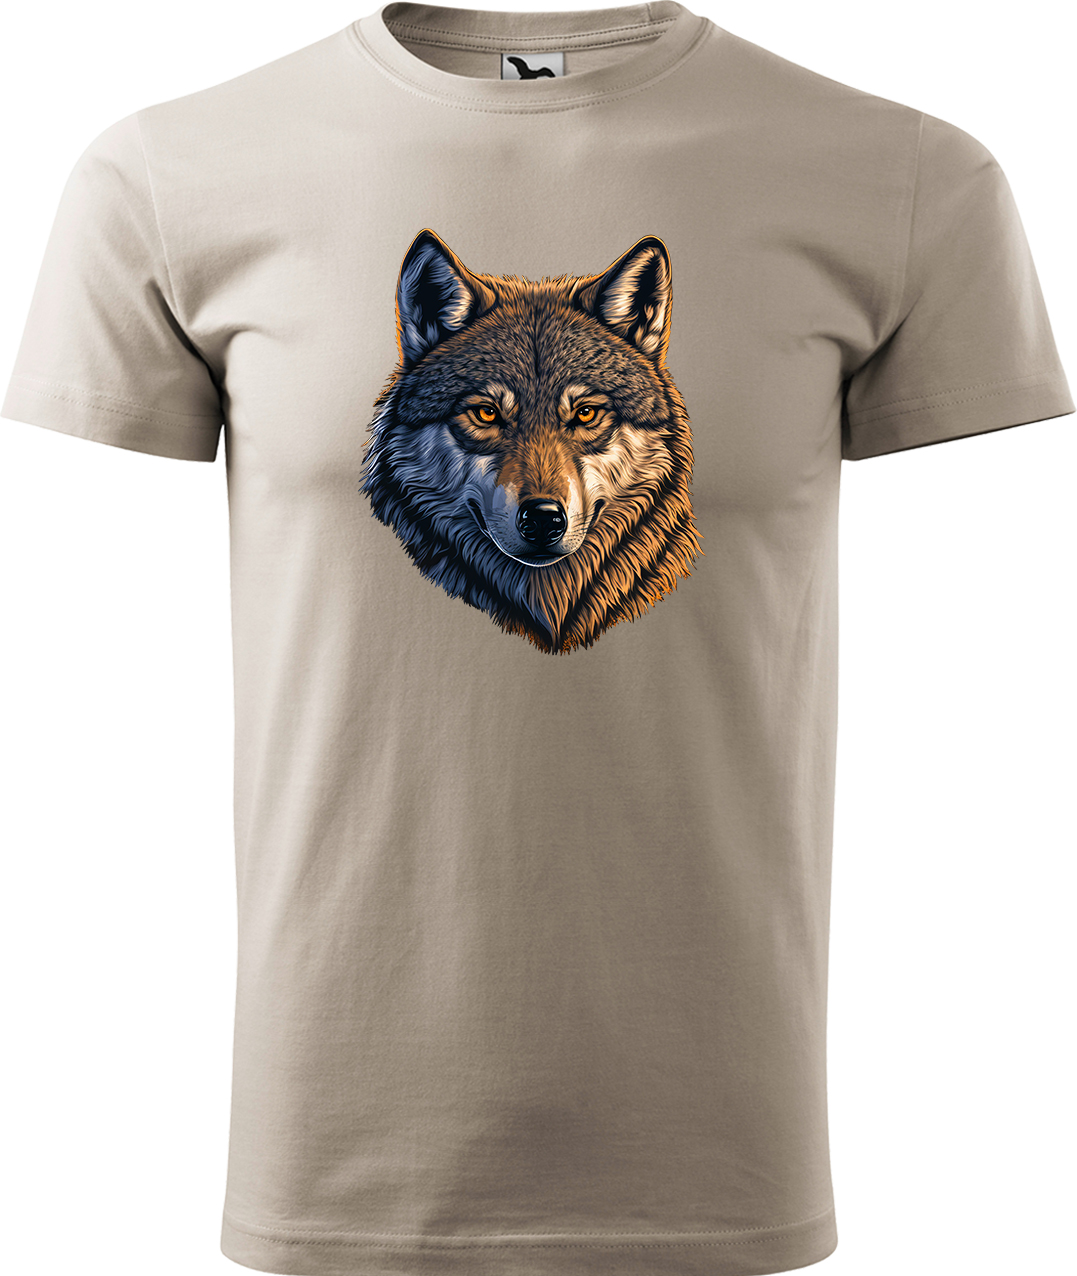 Pánské tričko s vlkem - Hlava vlka Velikost: M, Barva: Béžová (51), Střih: pánský